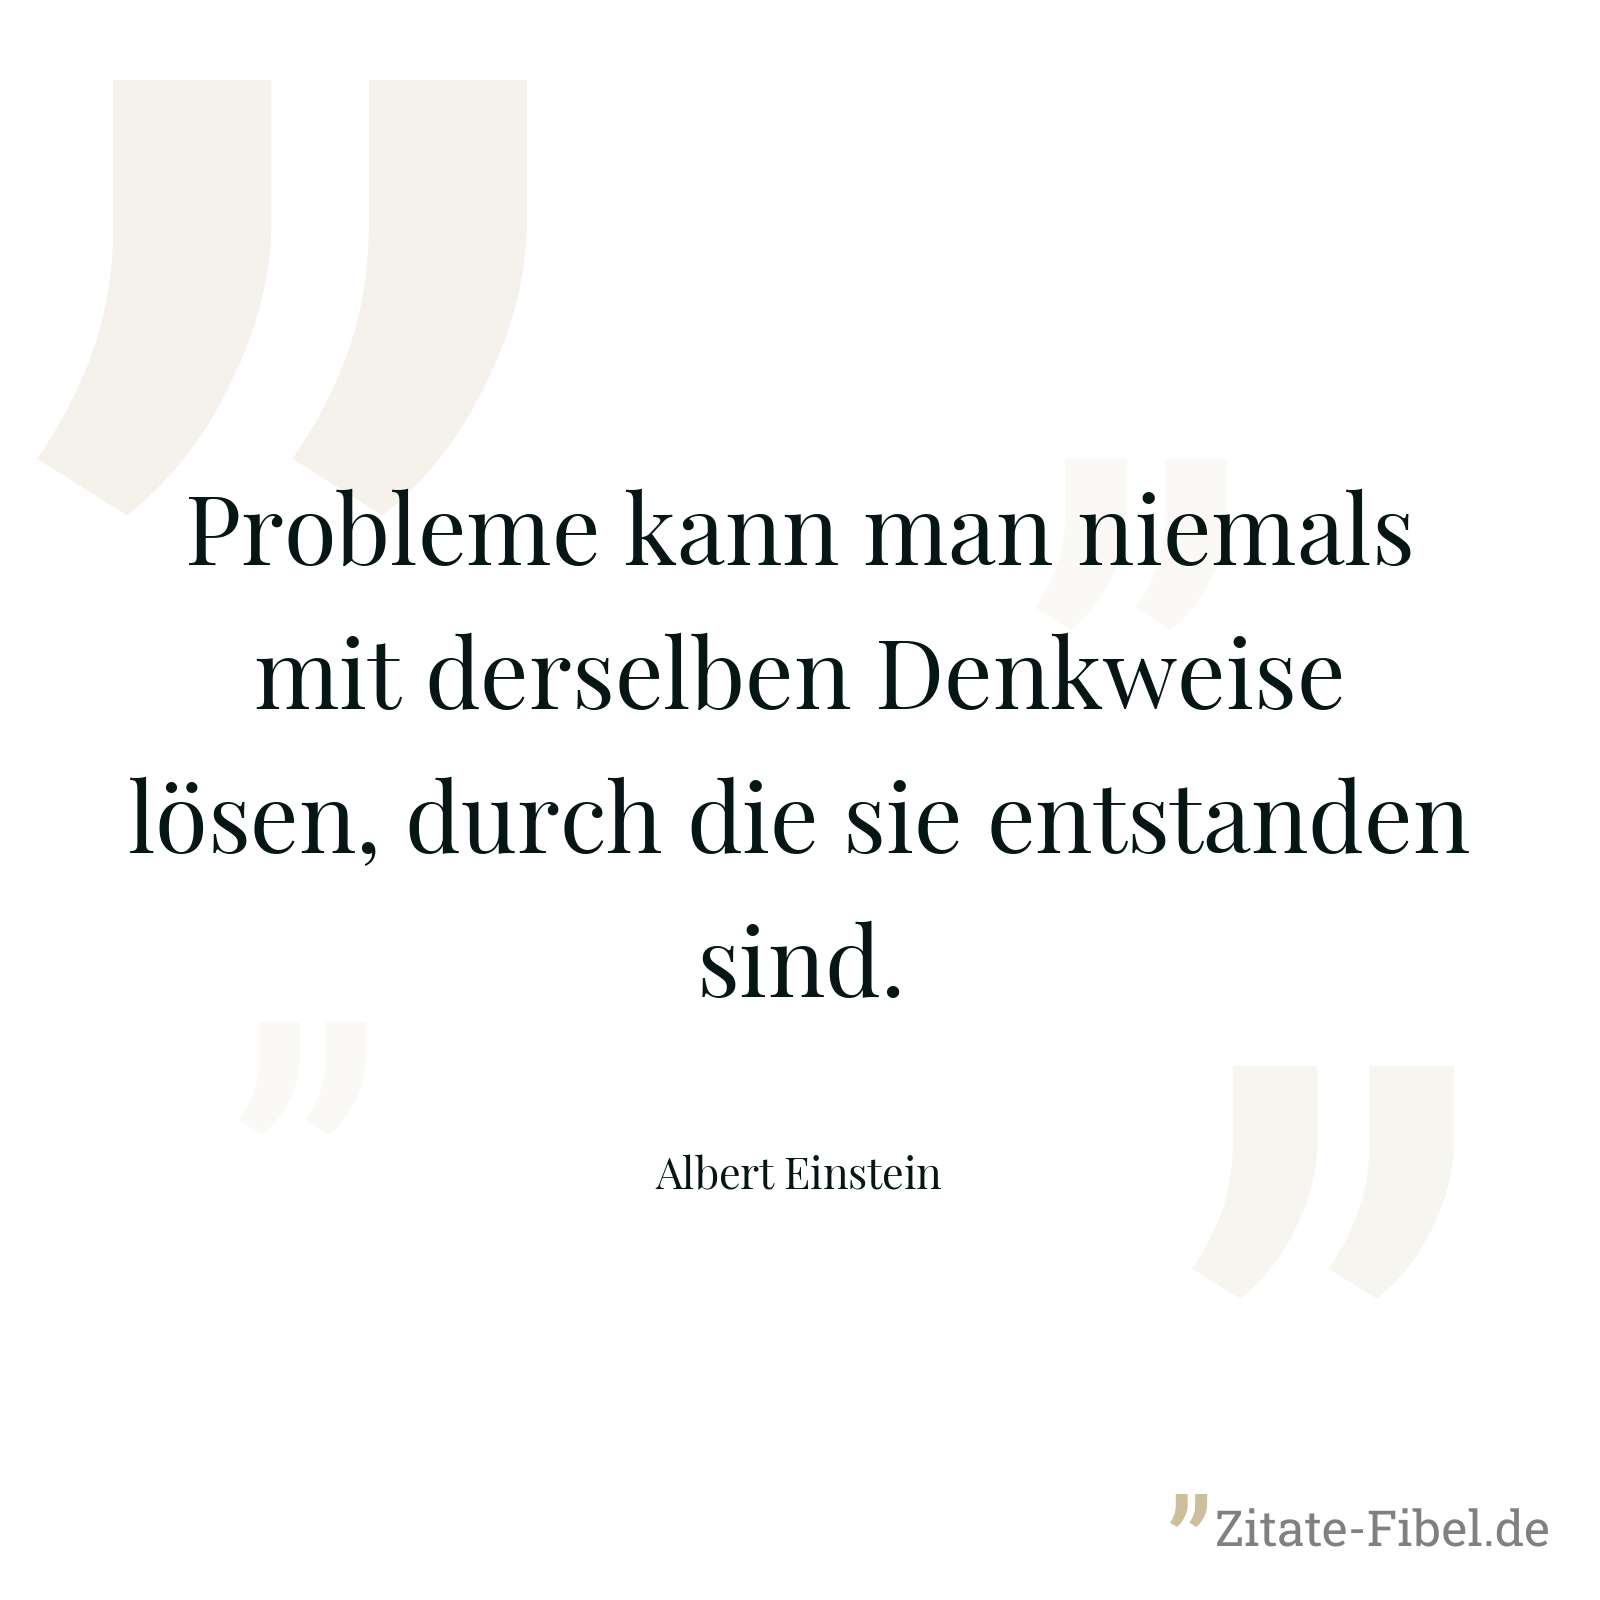 Probleme kann man niemals mit derselben Denkweise lösen, durch die sie entstanden sind. - Albert Einstein